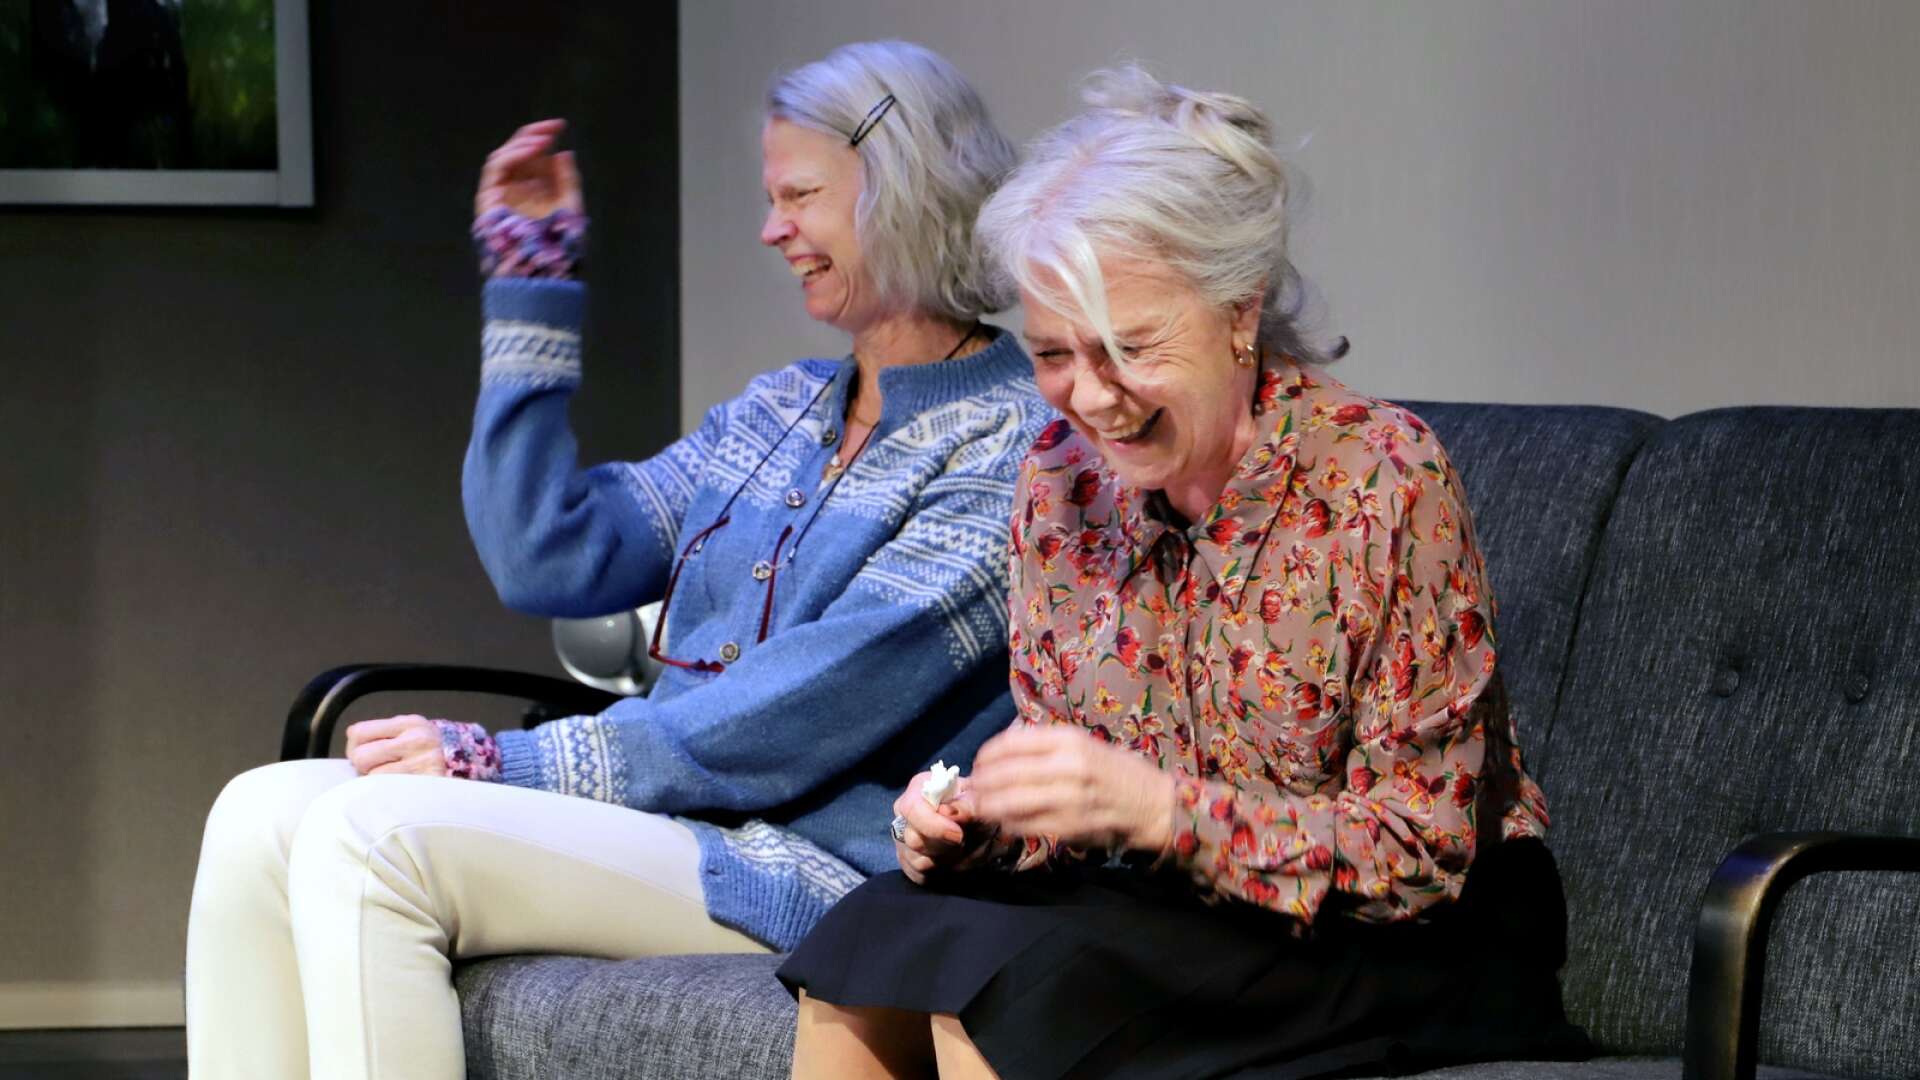 Vass pjäs av folkkär dramatiker om livet på en äldreboende spelas i Karlstad